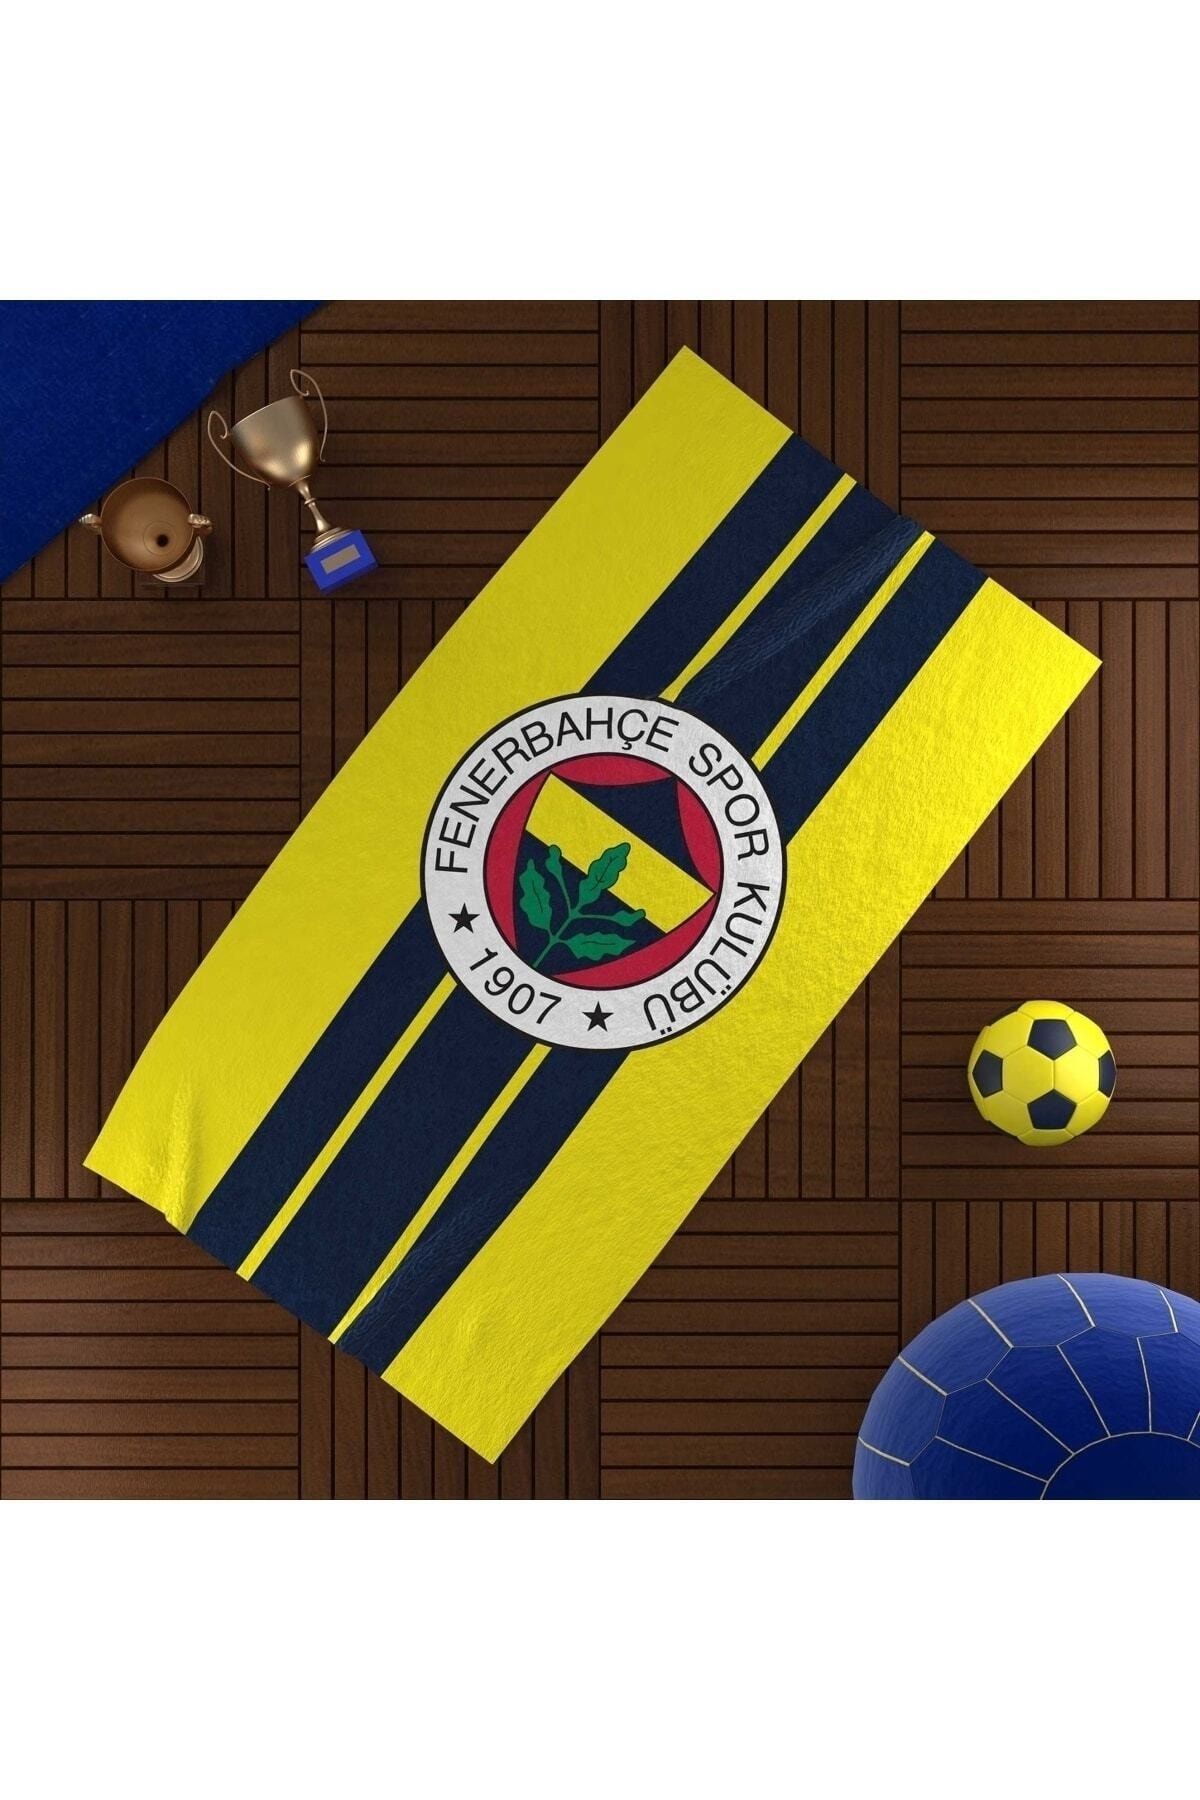 Taç Lisanslı Fenerbahçe Plaj Havlusu Fb Sarı Lacivert 75 X 150 Cm % 100 Cotton